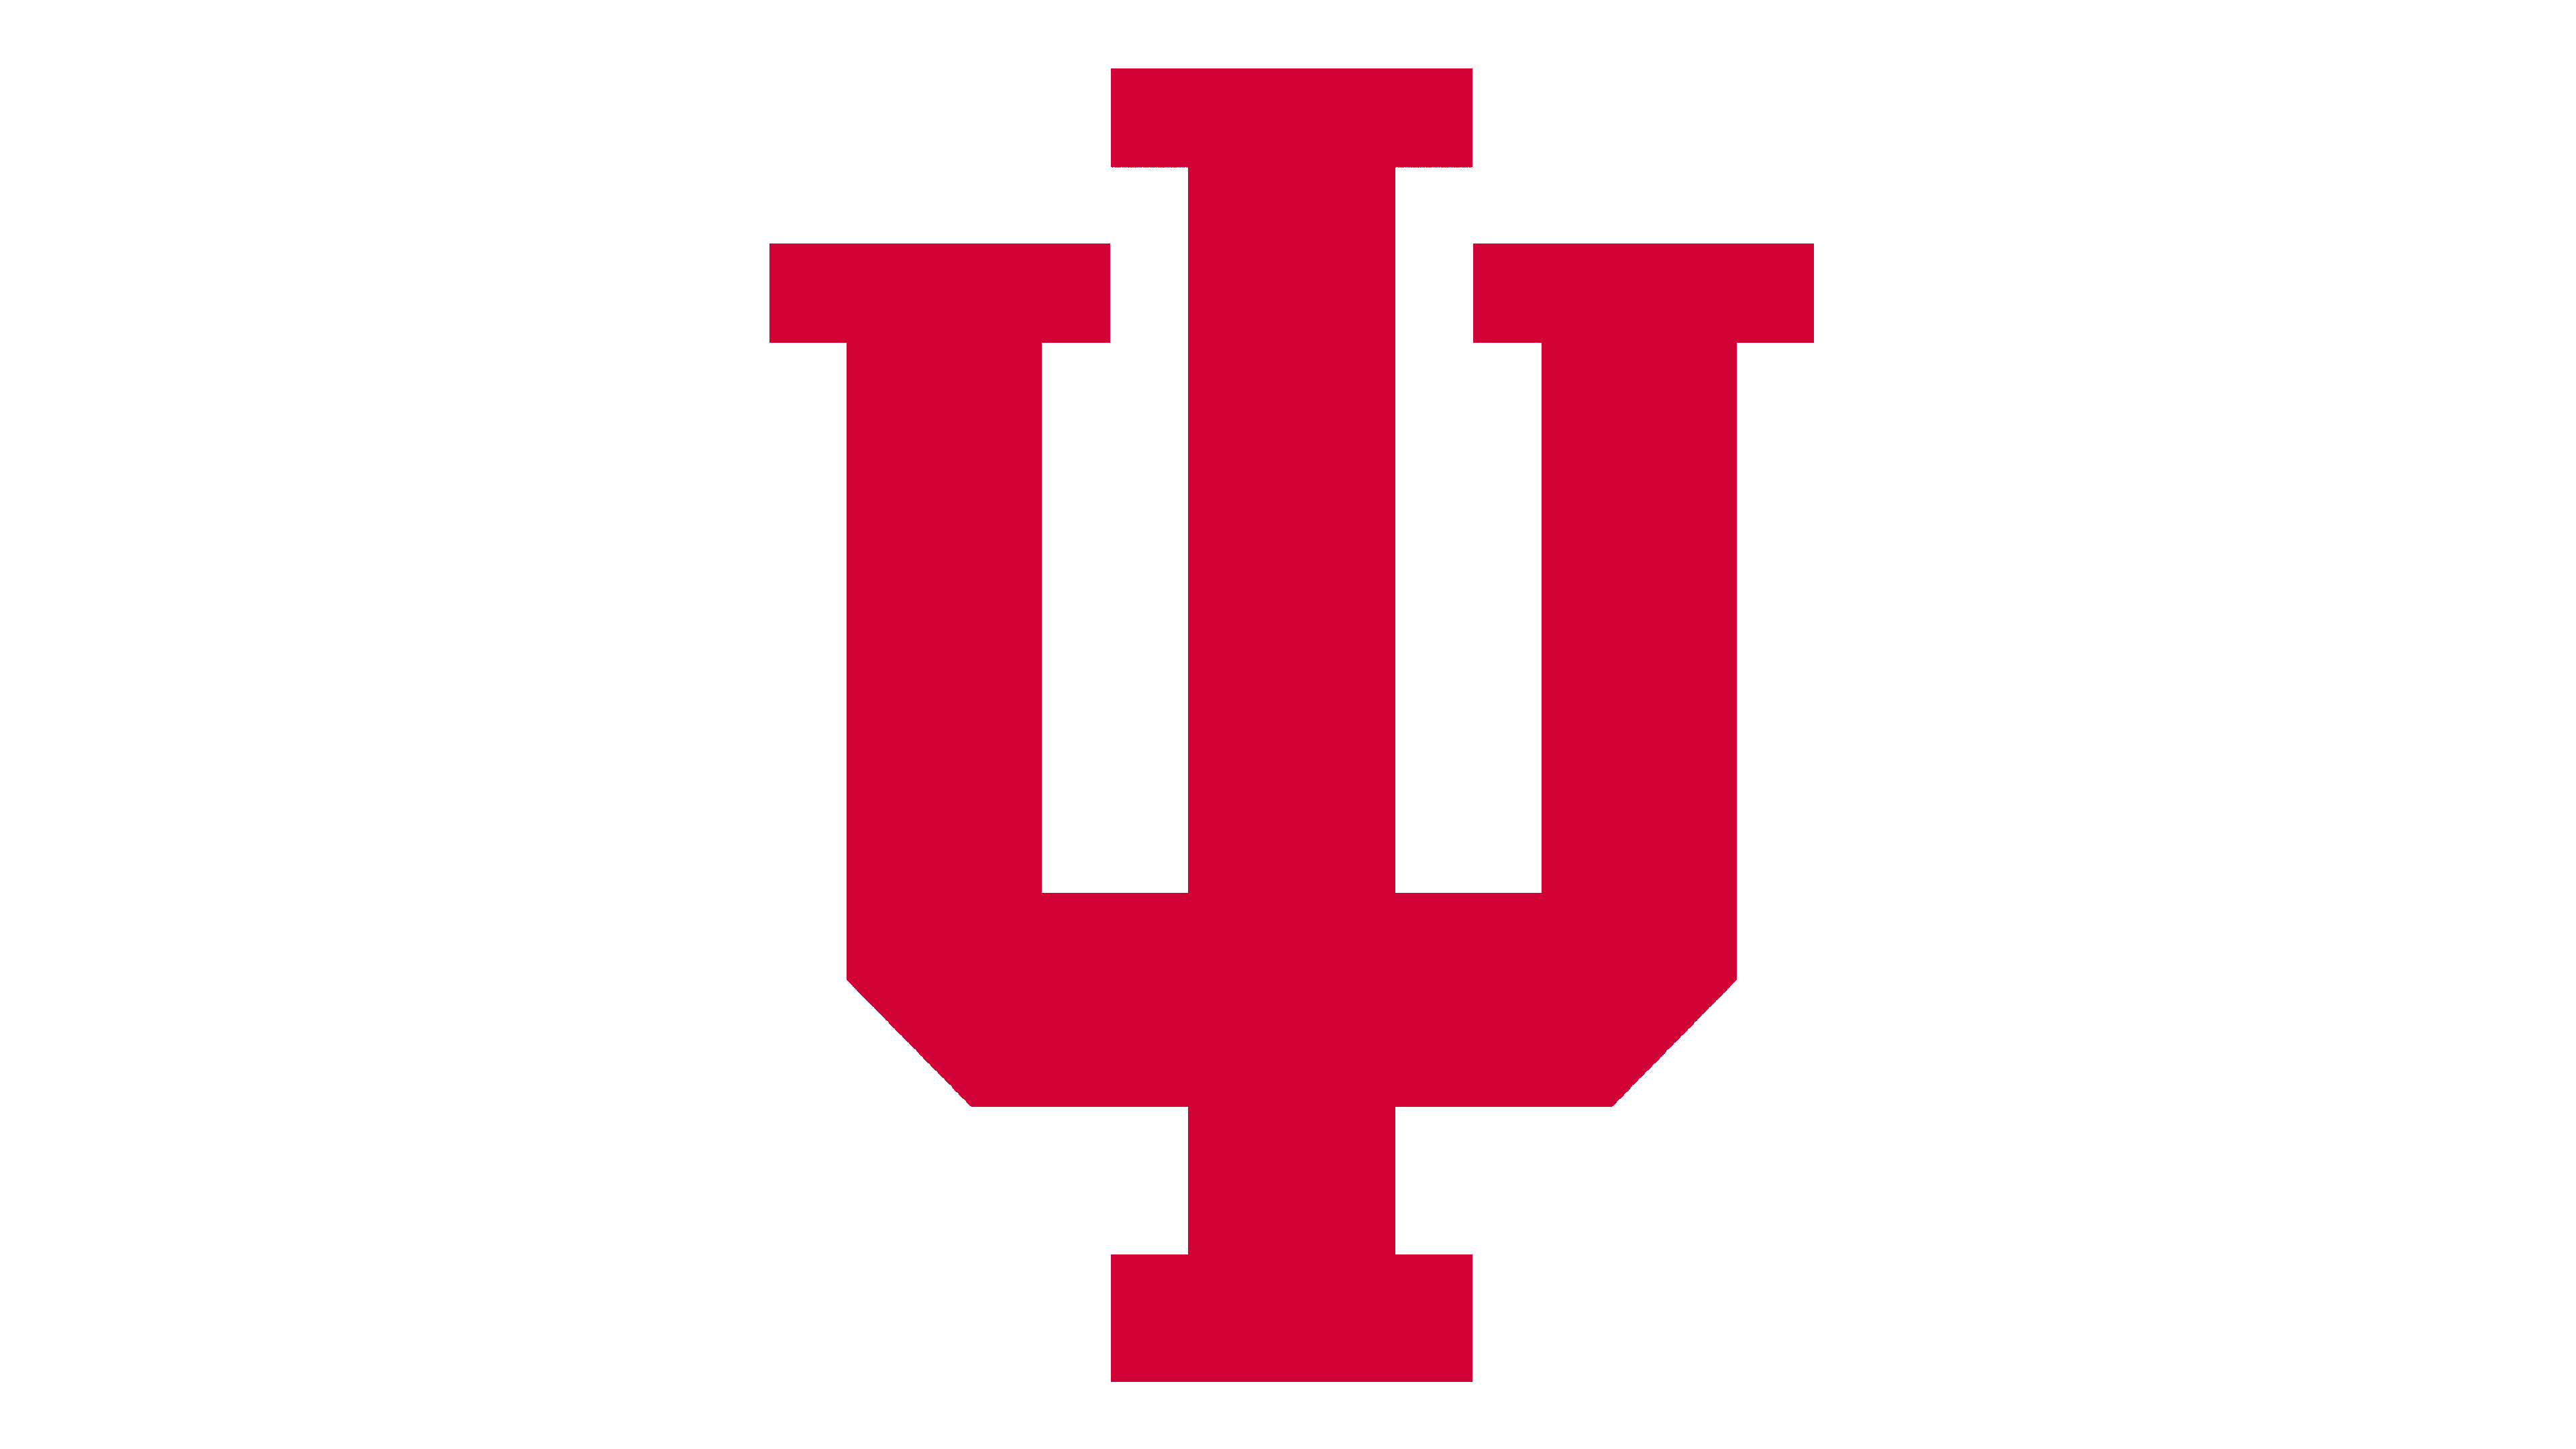 Indiana University Transparent Logo PNG